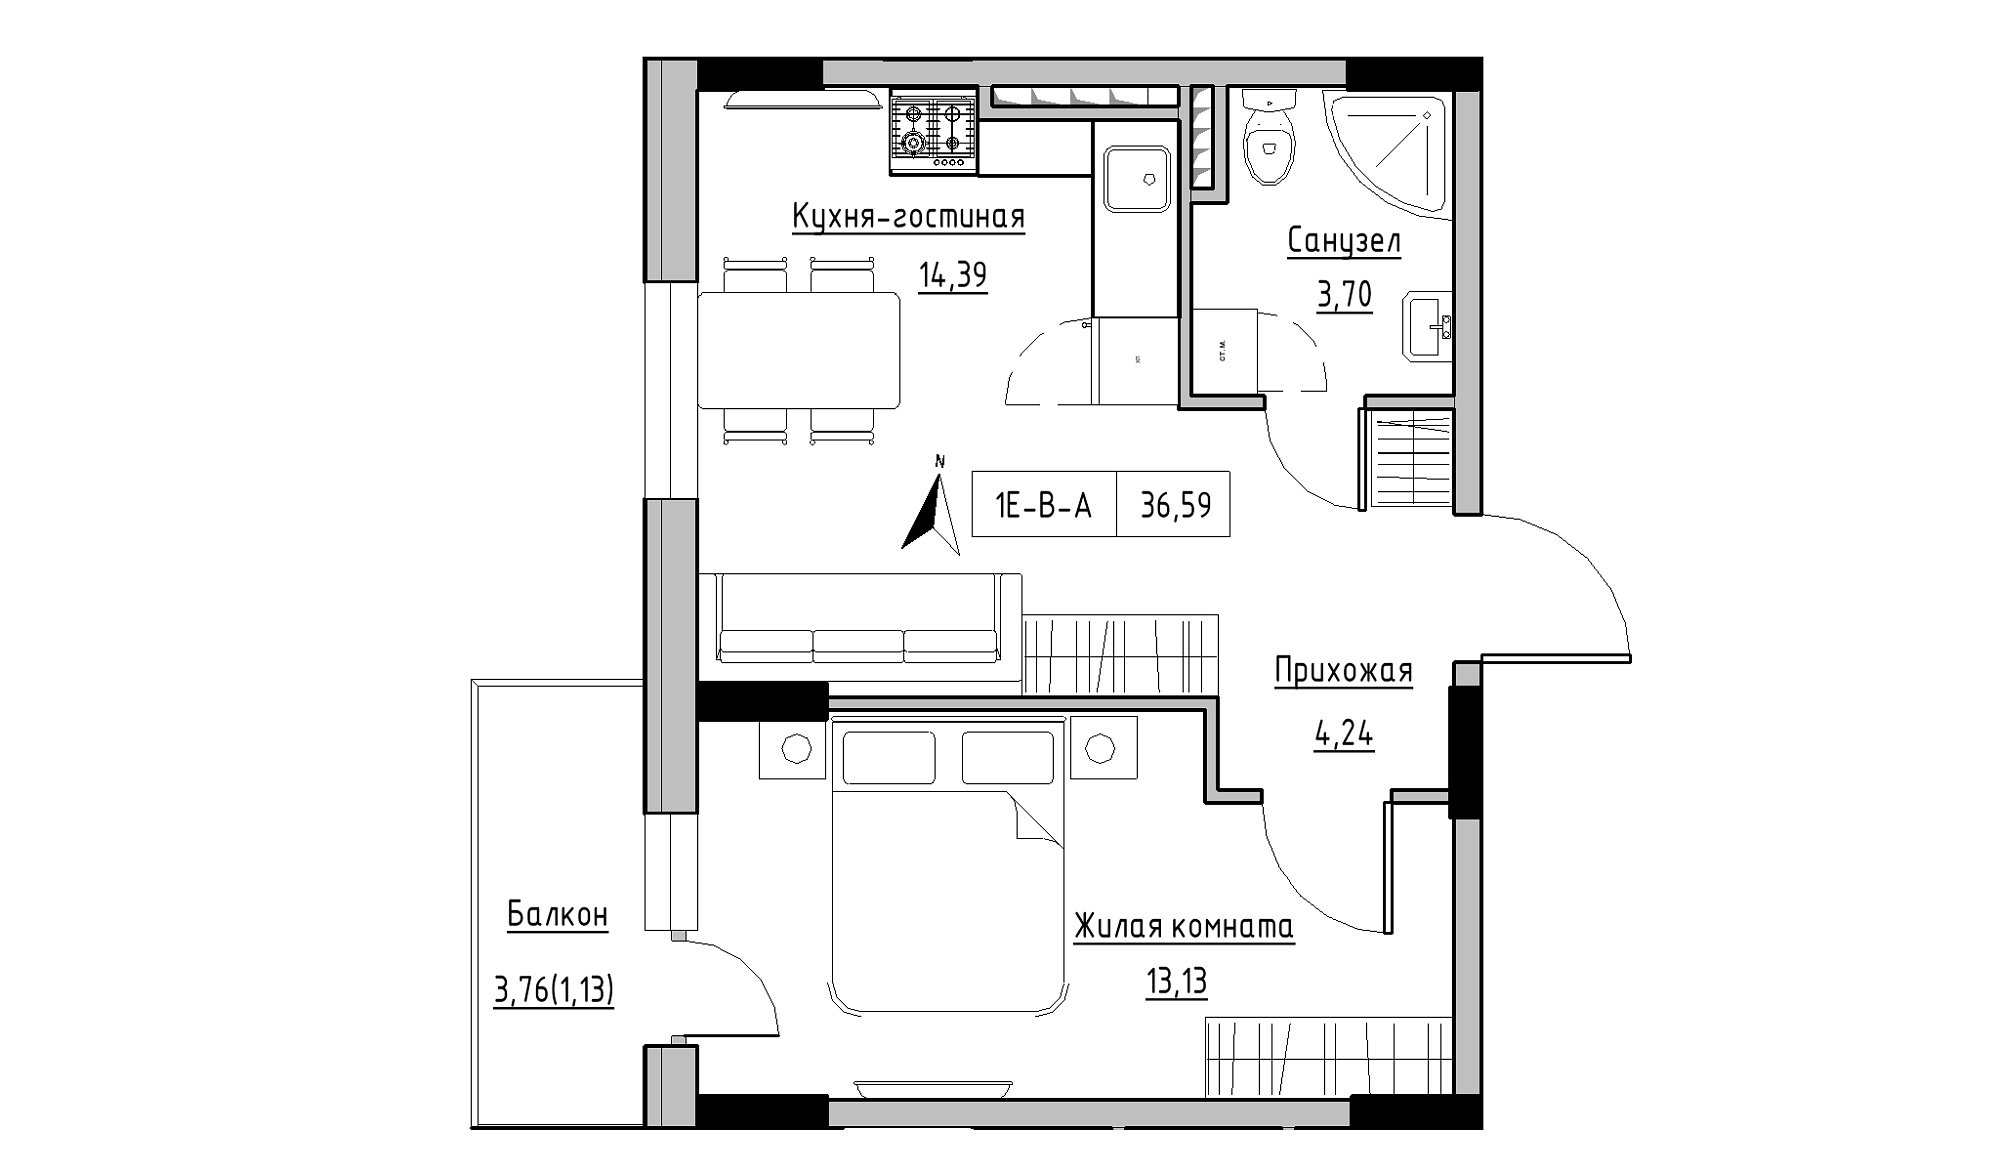 Планування 1-к квартира площею 36.59м2, KS-025-04/0004.